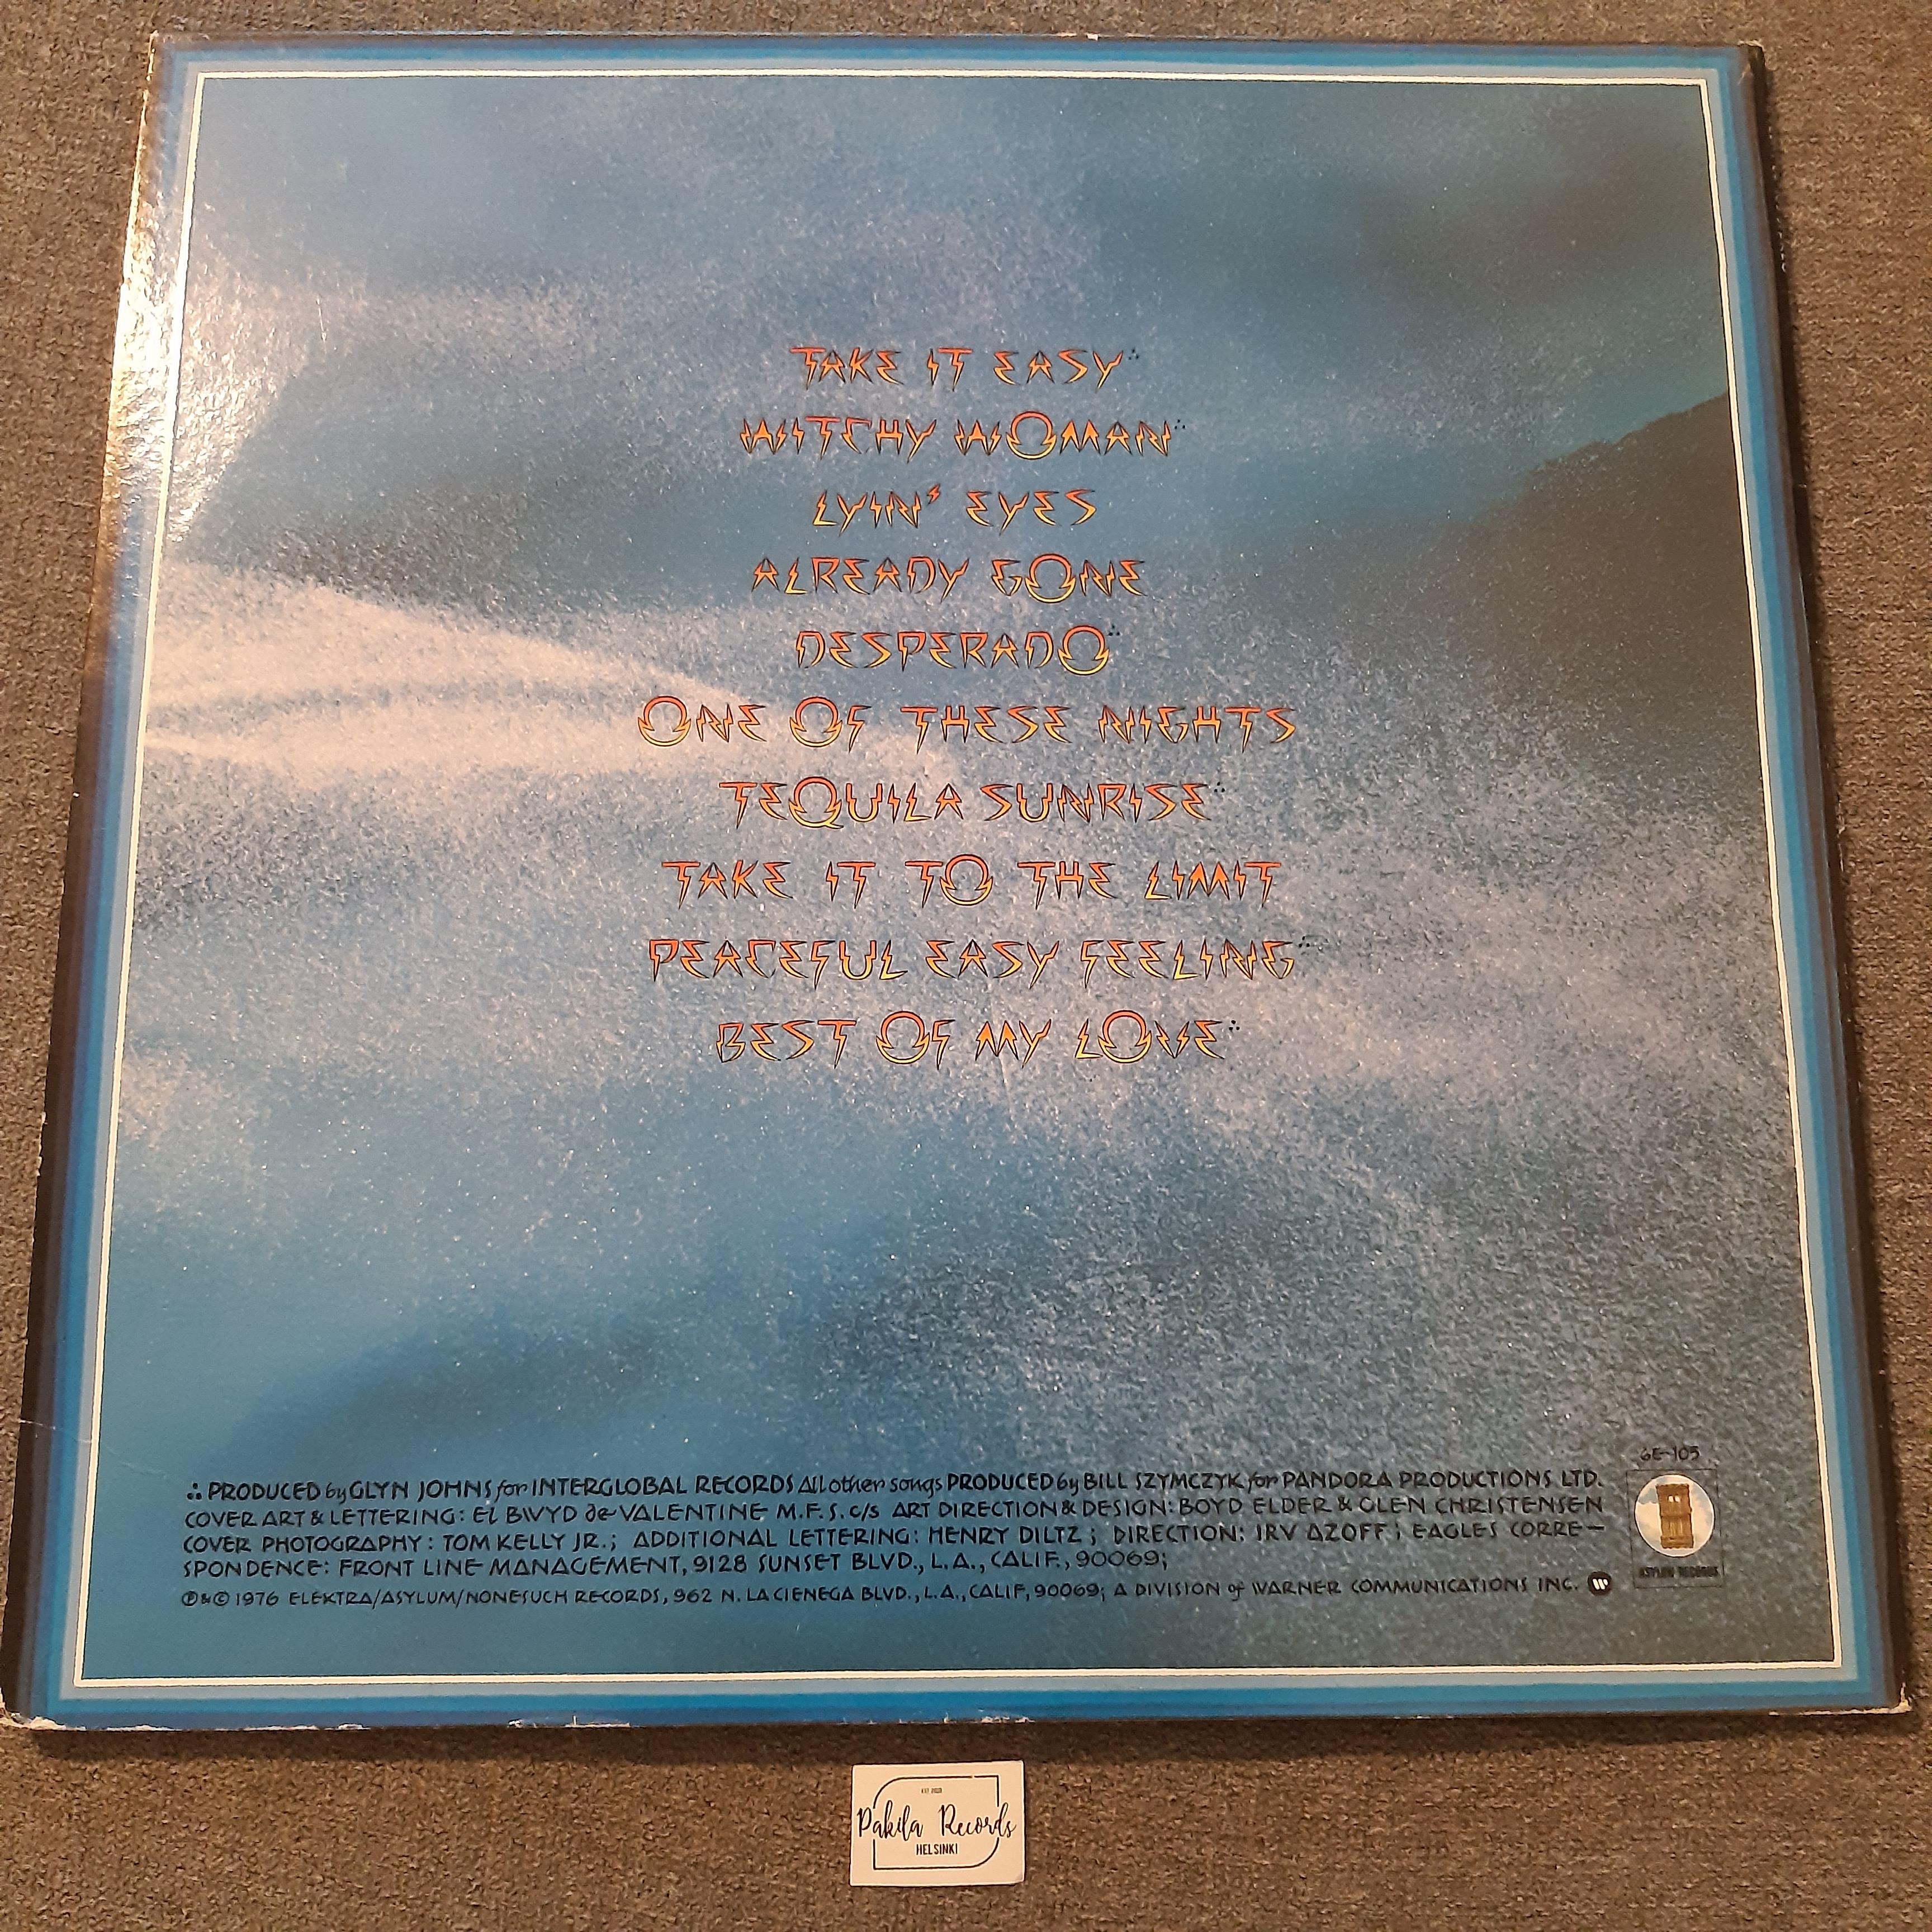 Eagles - Their Greatest Hits 1971-1975 - LP (käytetty)